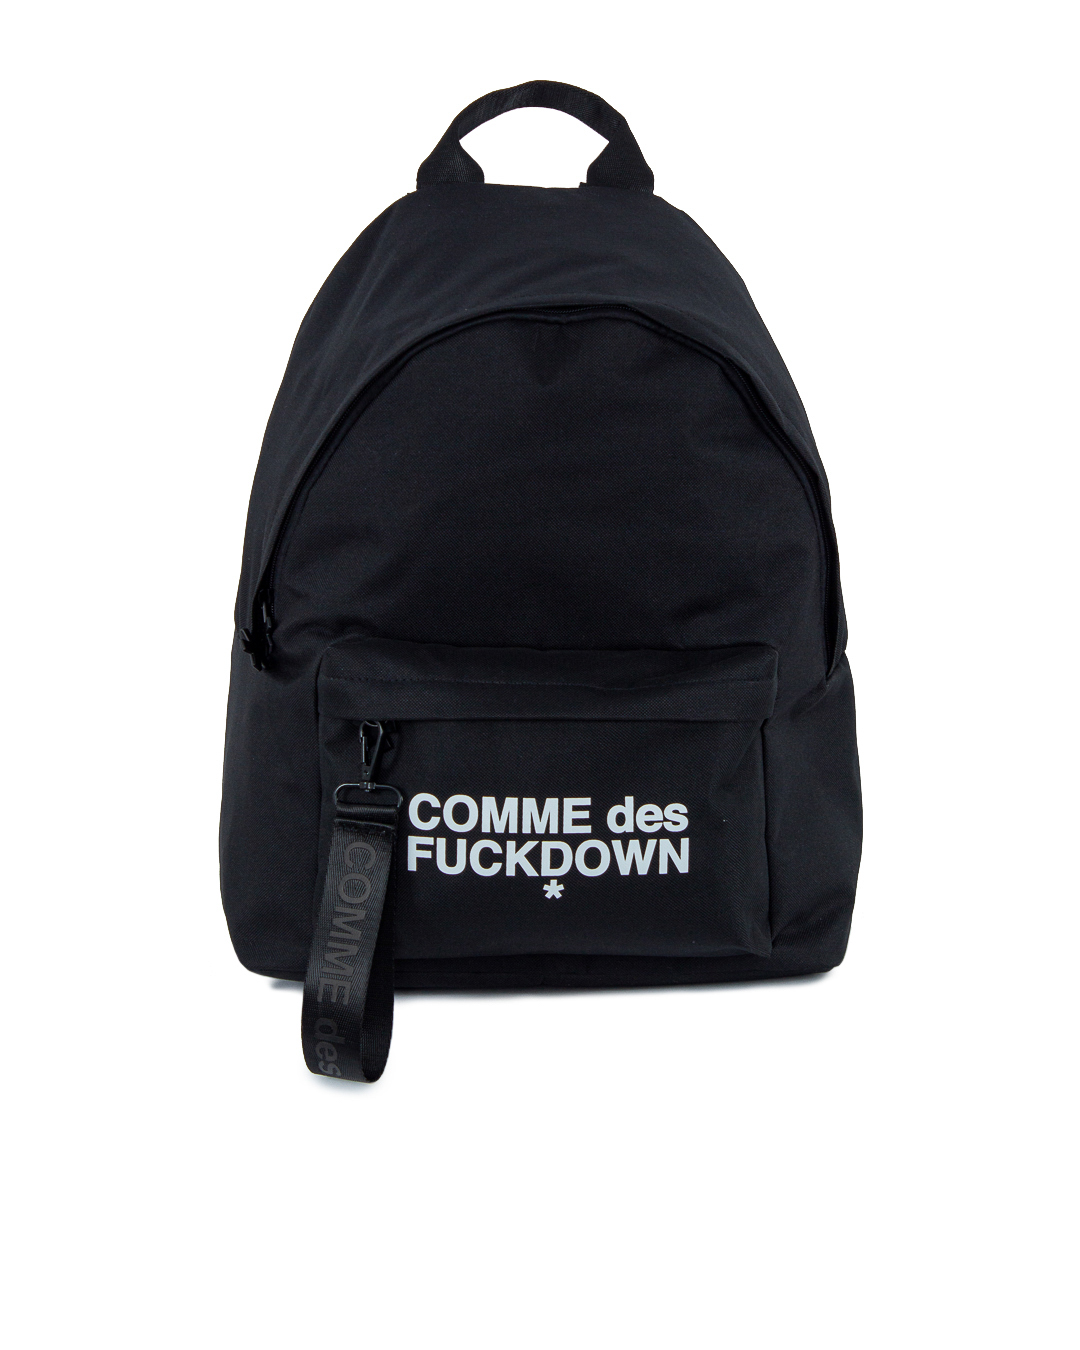 текстильный рюкзак COMME des FUCKDOWN